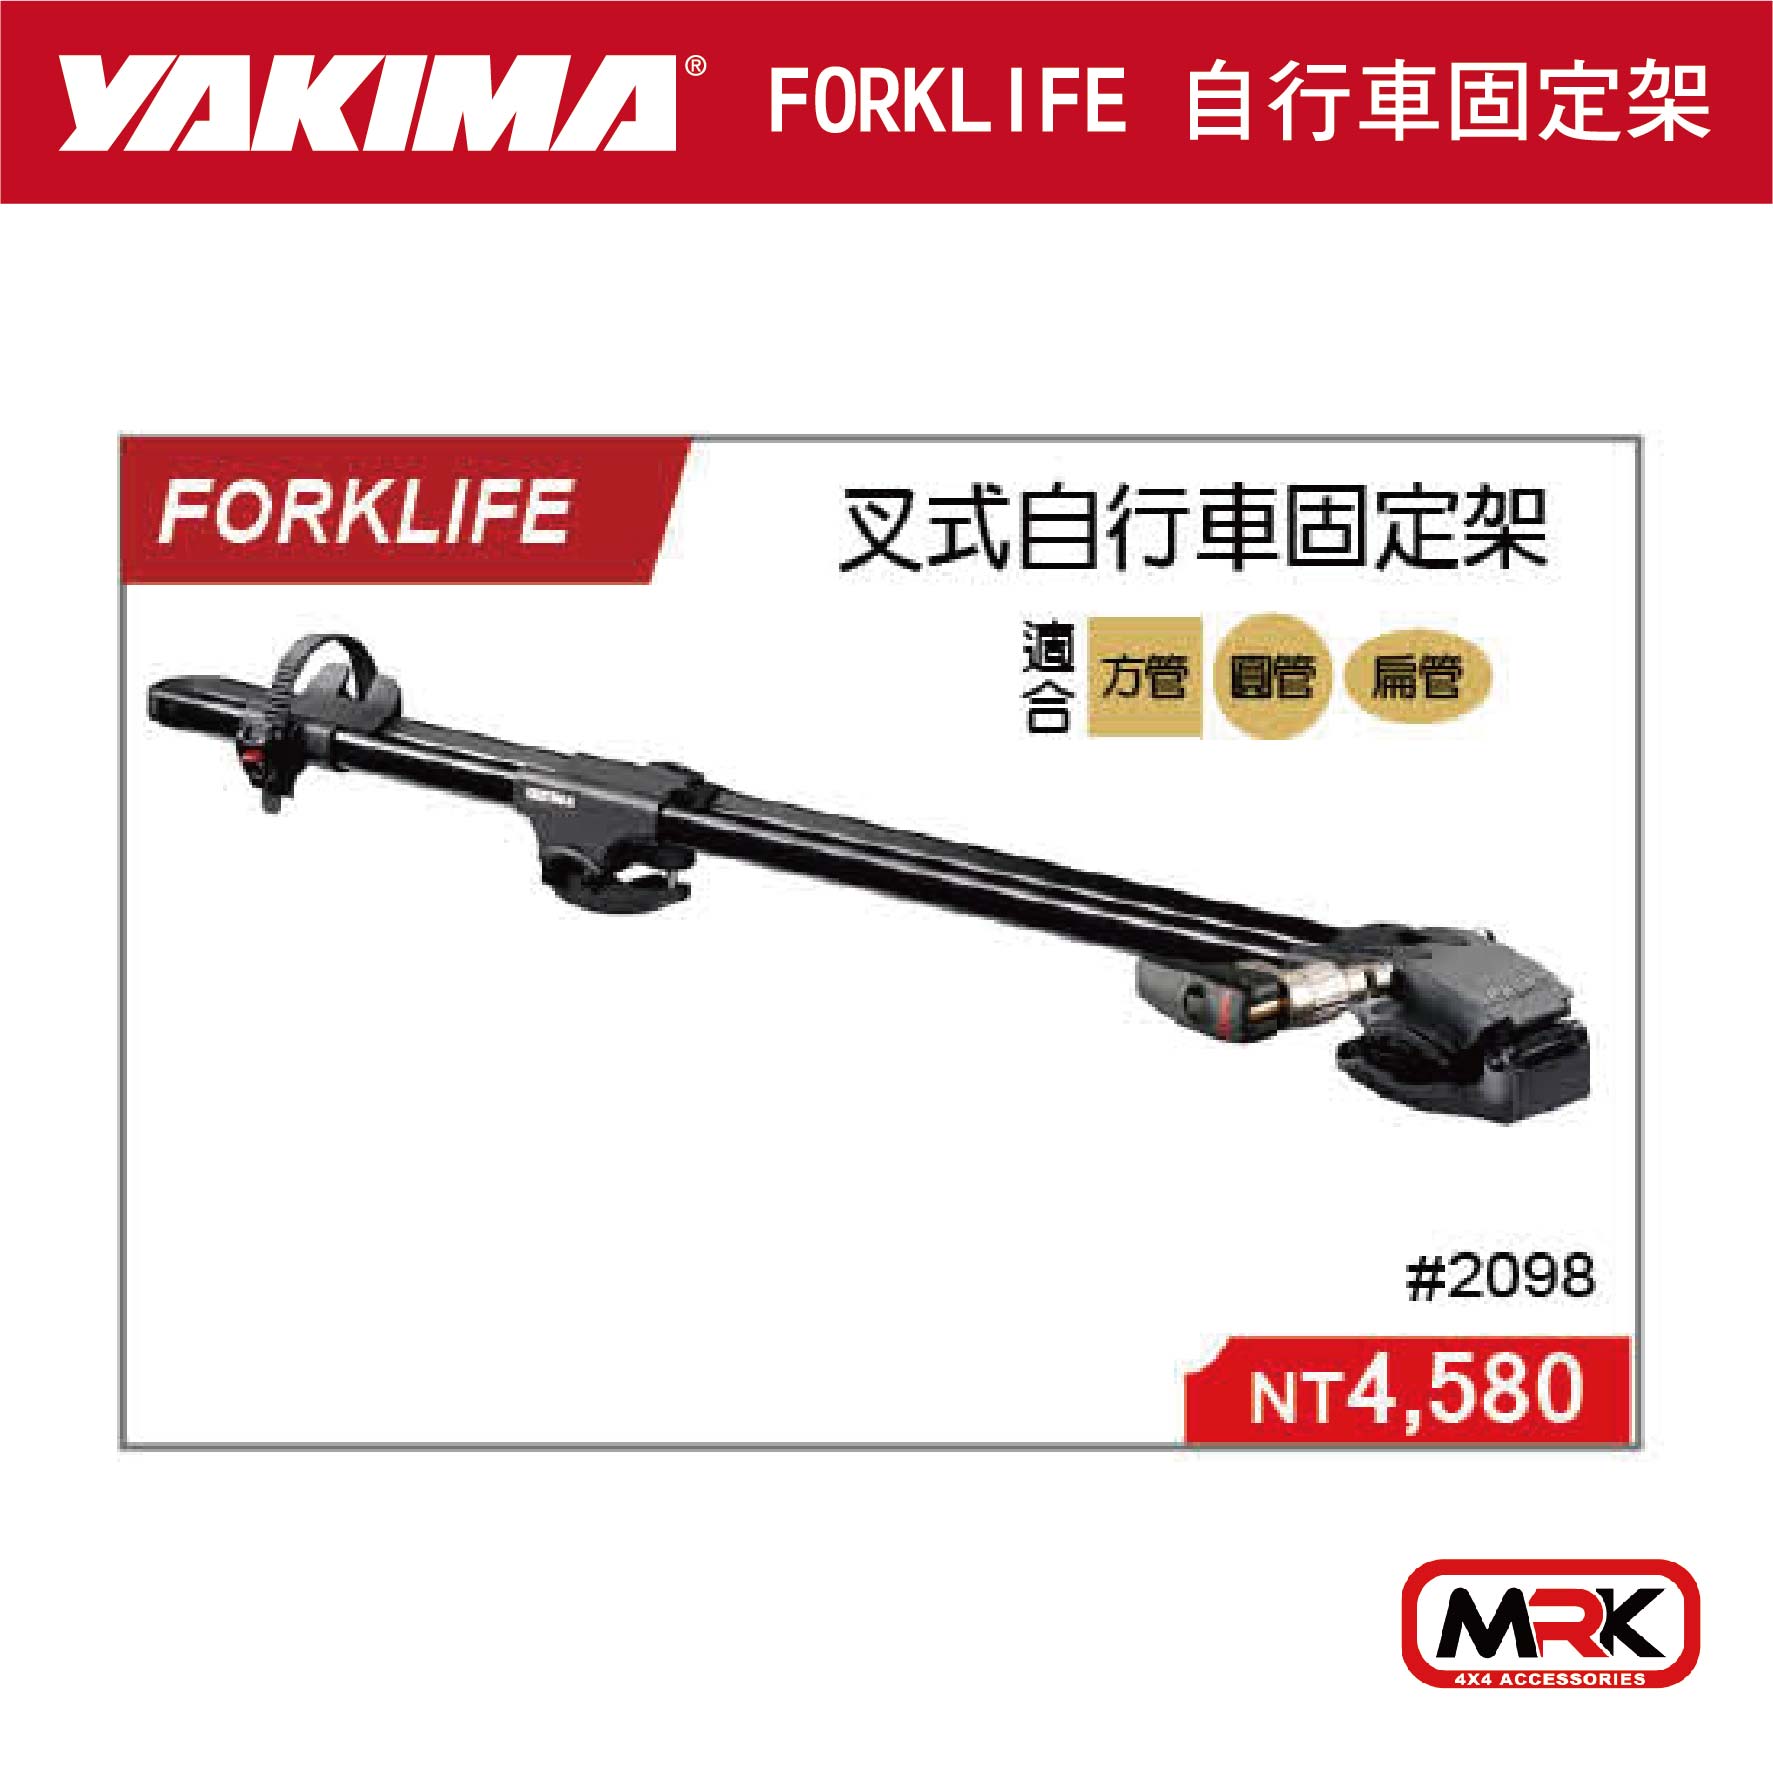 【MRK】YAKIMA FORKLIFE 叉式自行車固定架 自行車攜車架 2098